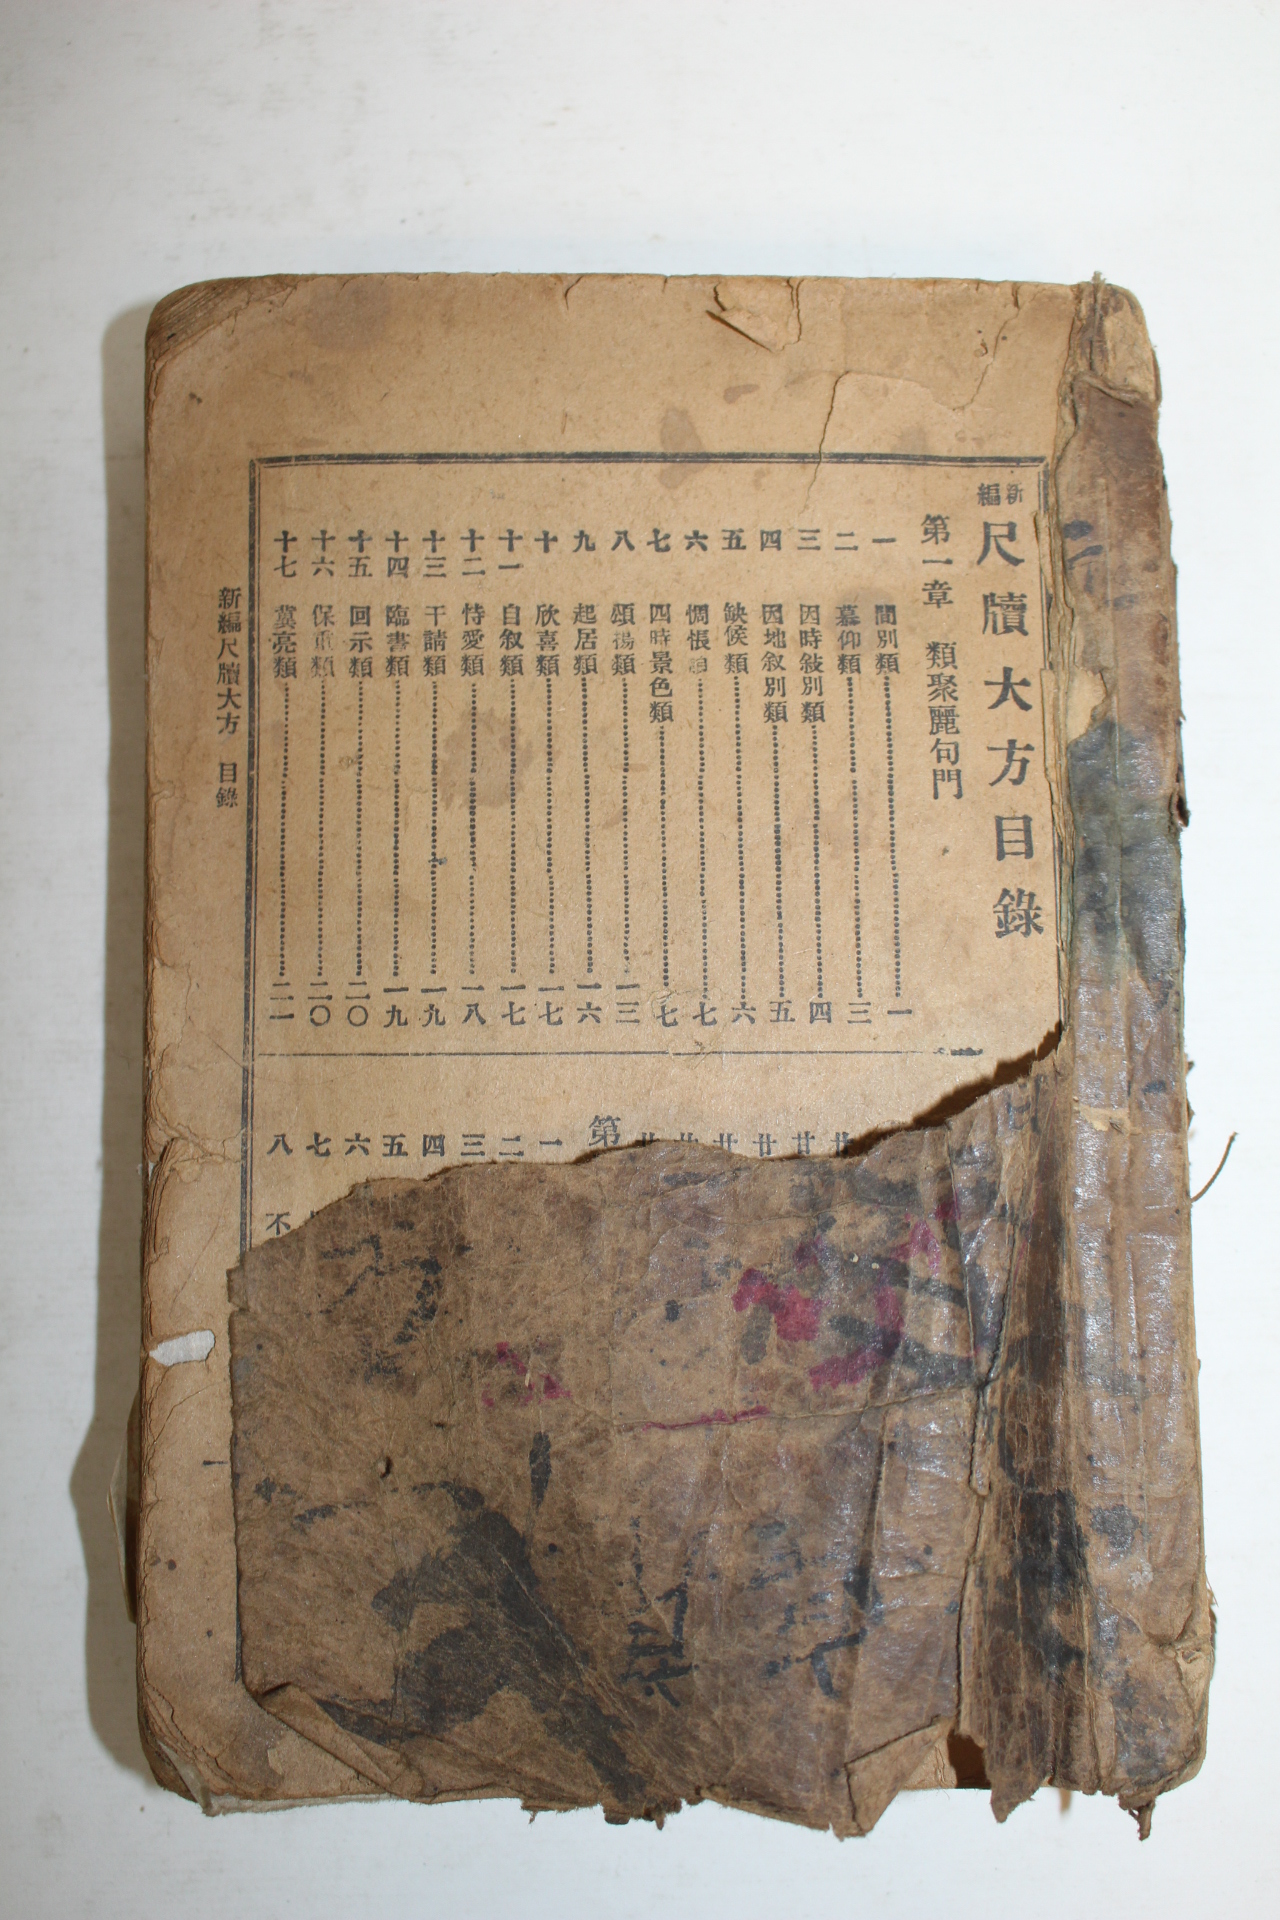 1918년(대정8년) 신편 척독대방(尺牘大方) 1책완질